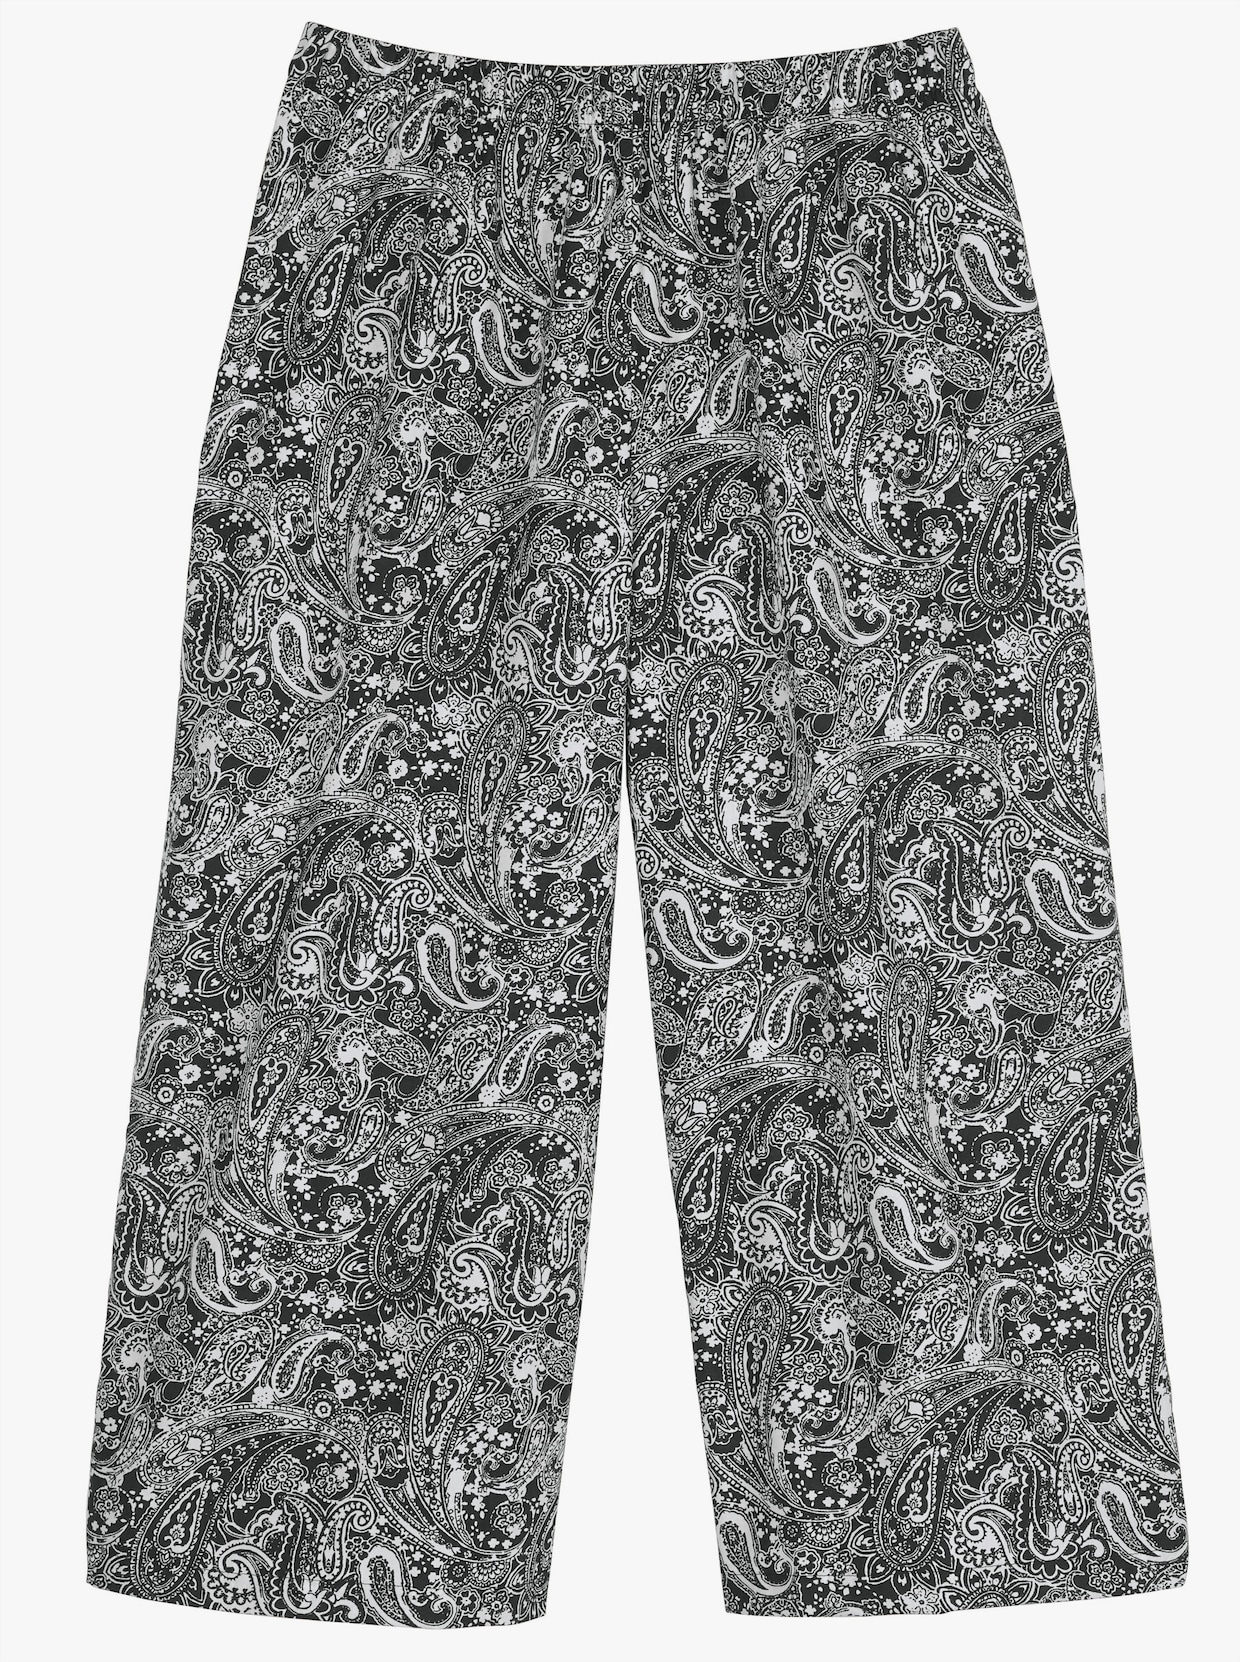 Nohavicová sukňa - Čierno-biely vzor